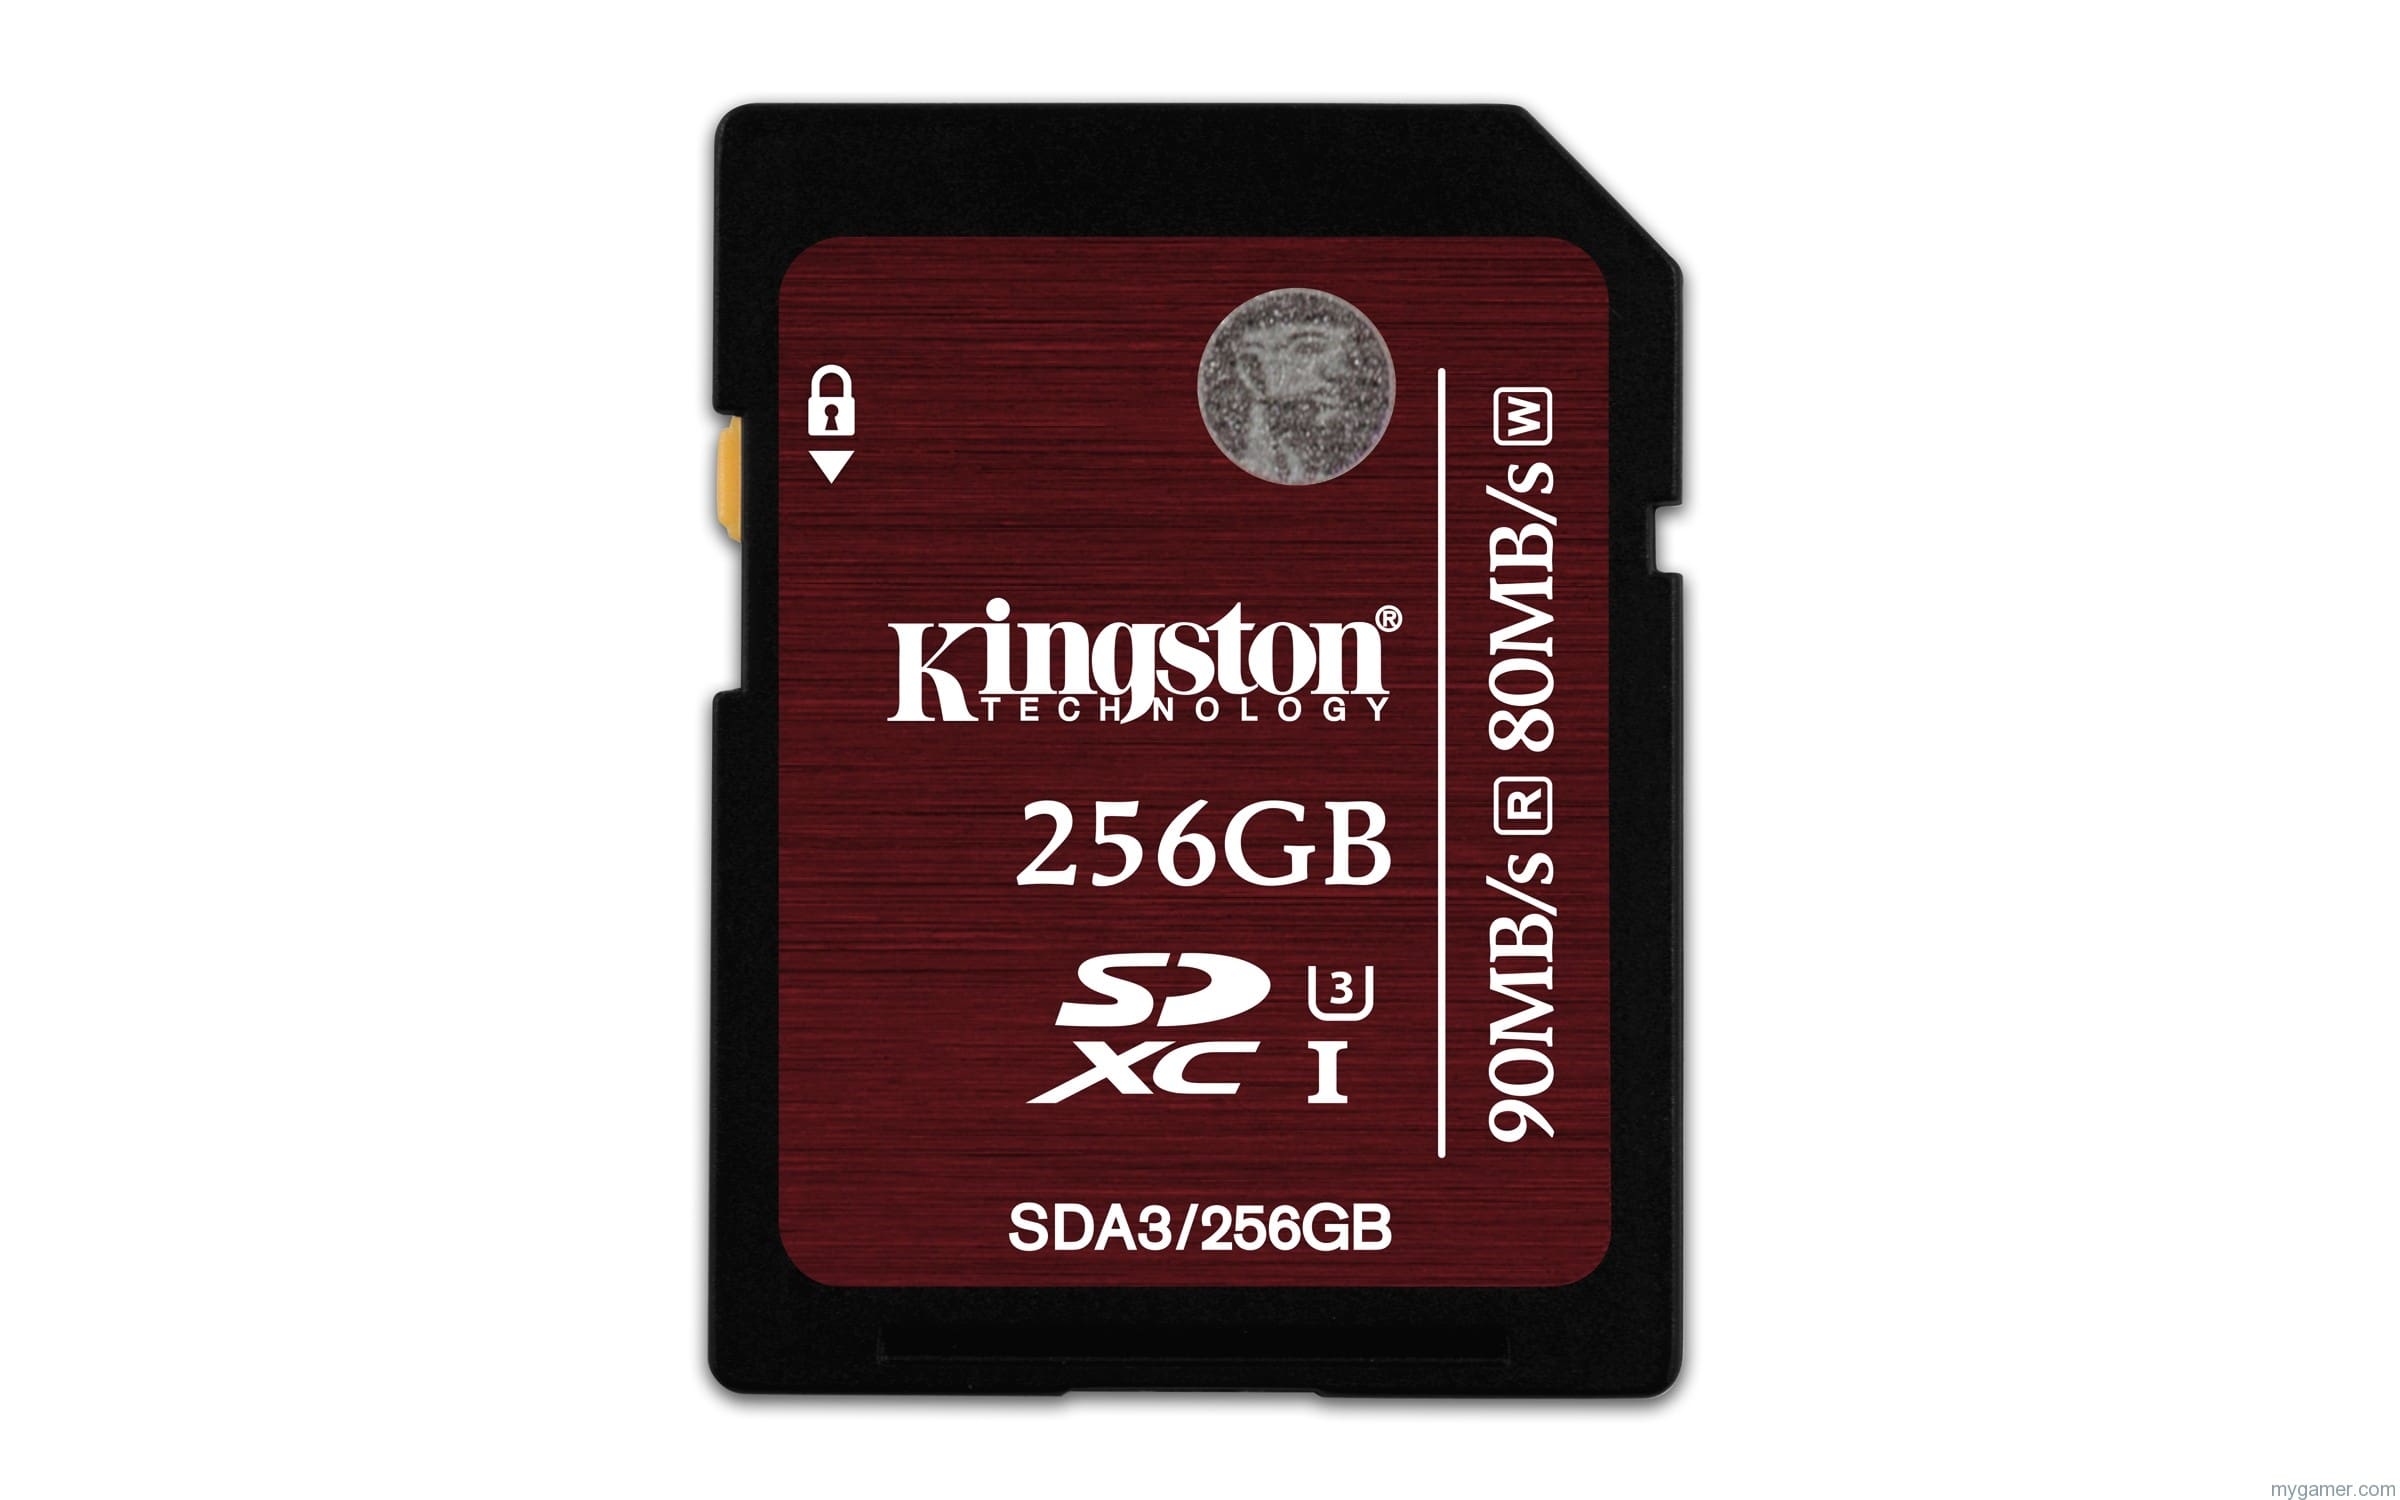 Kingston UHS I U3 256GB SDA3 256GB